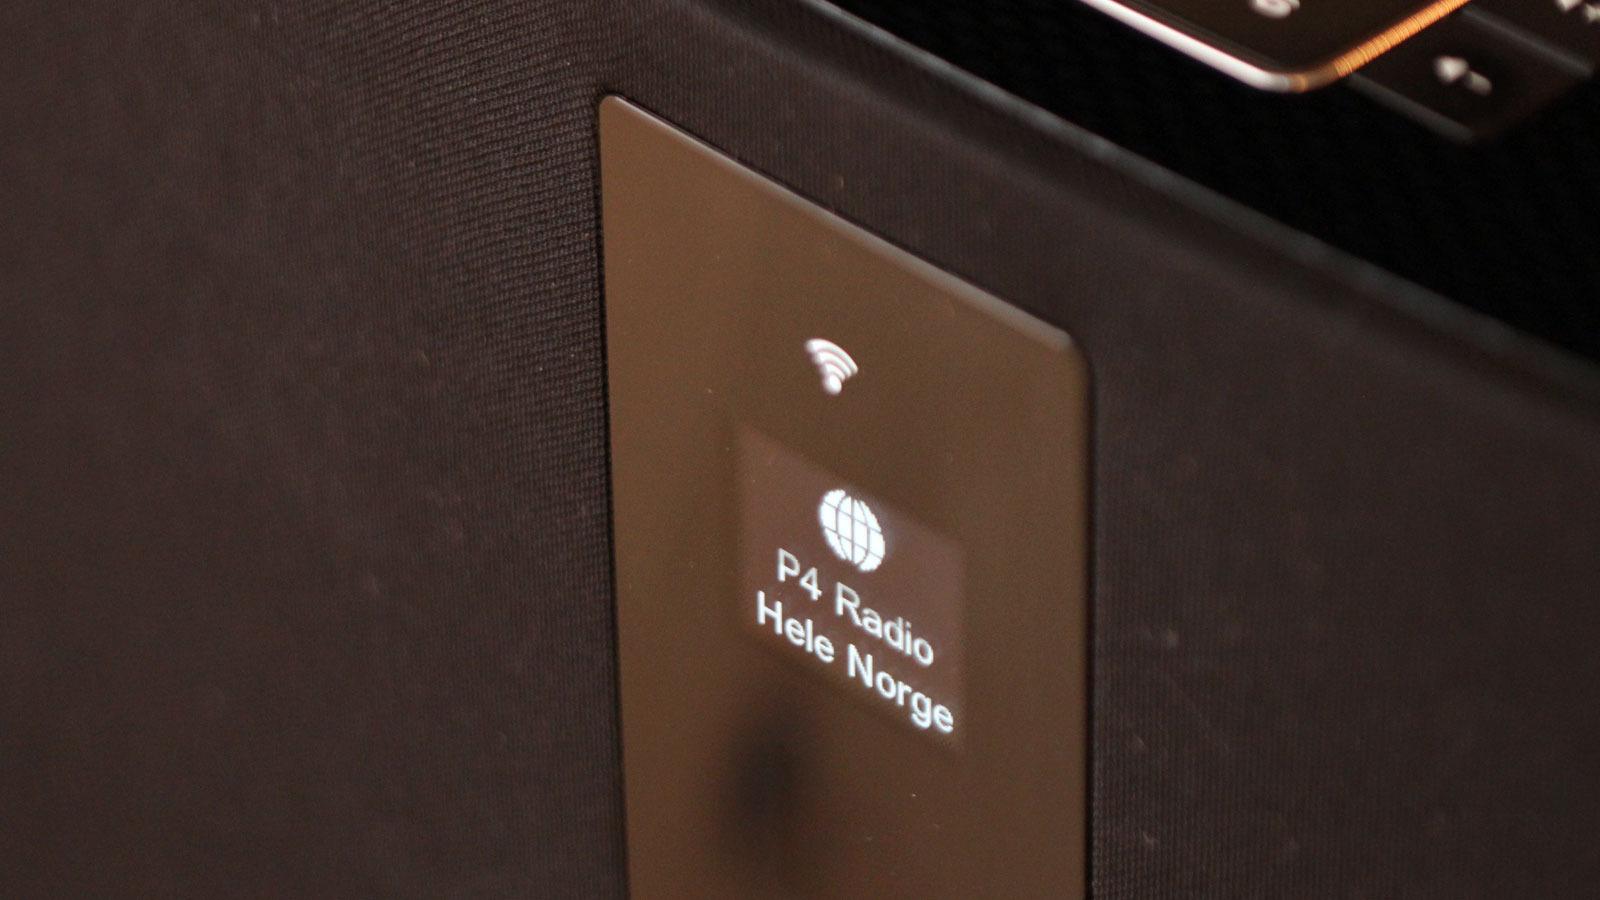 Bose ST 30 har OLED-skjerm, men den er ikke så stor som plastfeltet kan forlede til å tro. Foto: Espen Irwing Swang, Tek.no